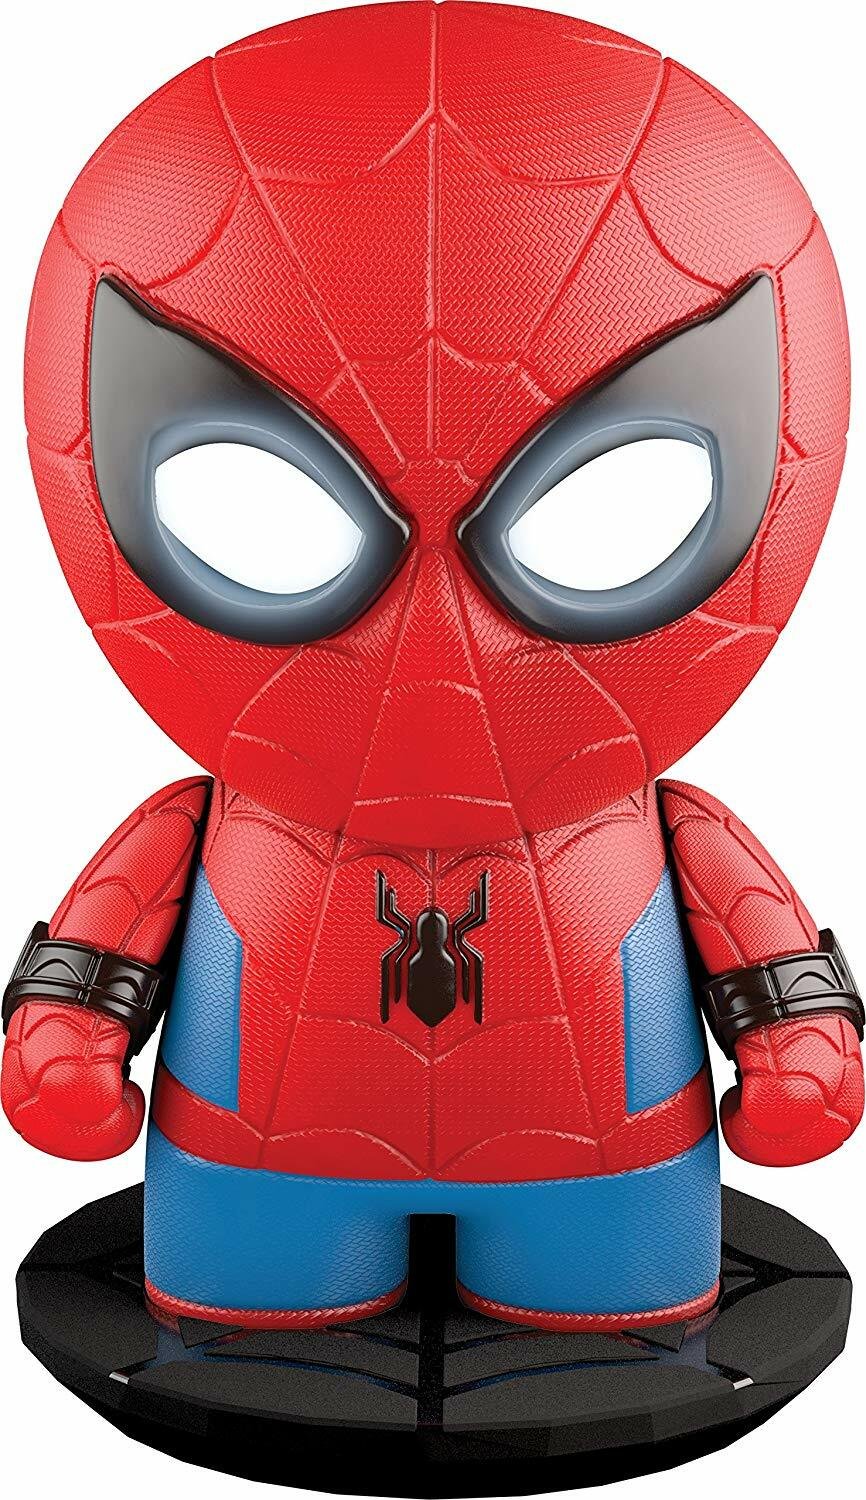 Immagine stampa dello Spider-Man interattivo di Sphero